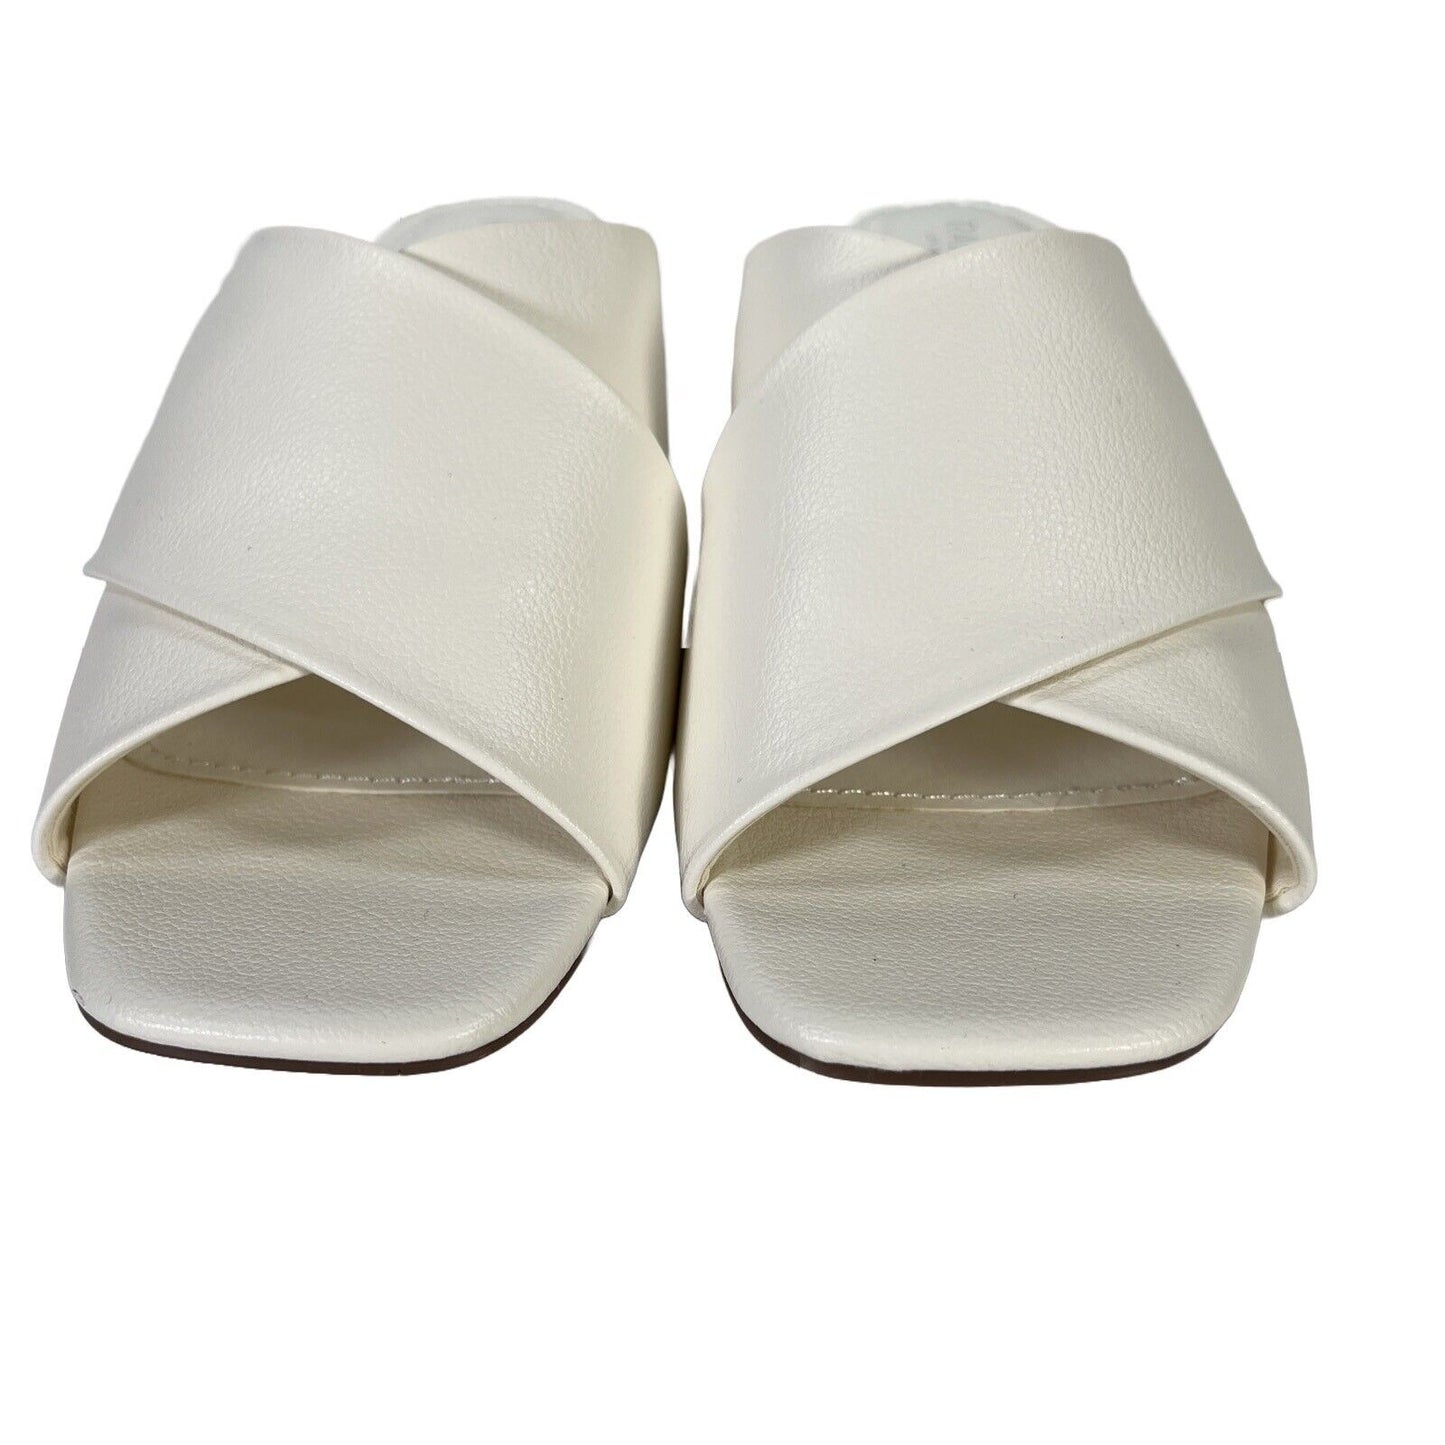 NEW Rachel Zoe Women's White Peep Toe Low Block Heel Sandals - 9.5